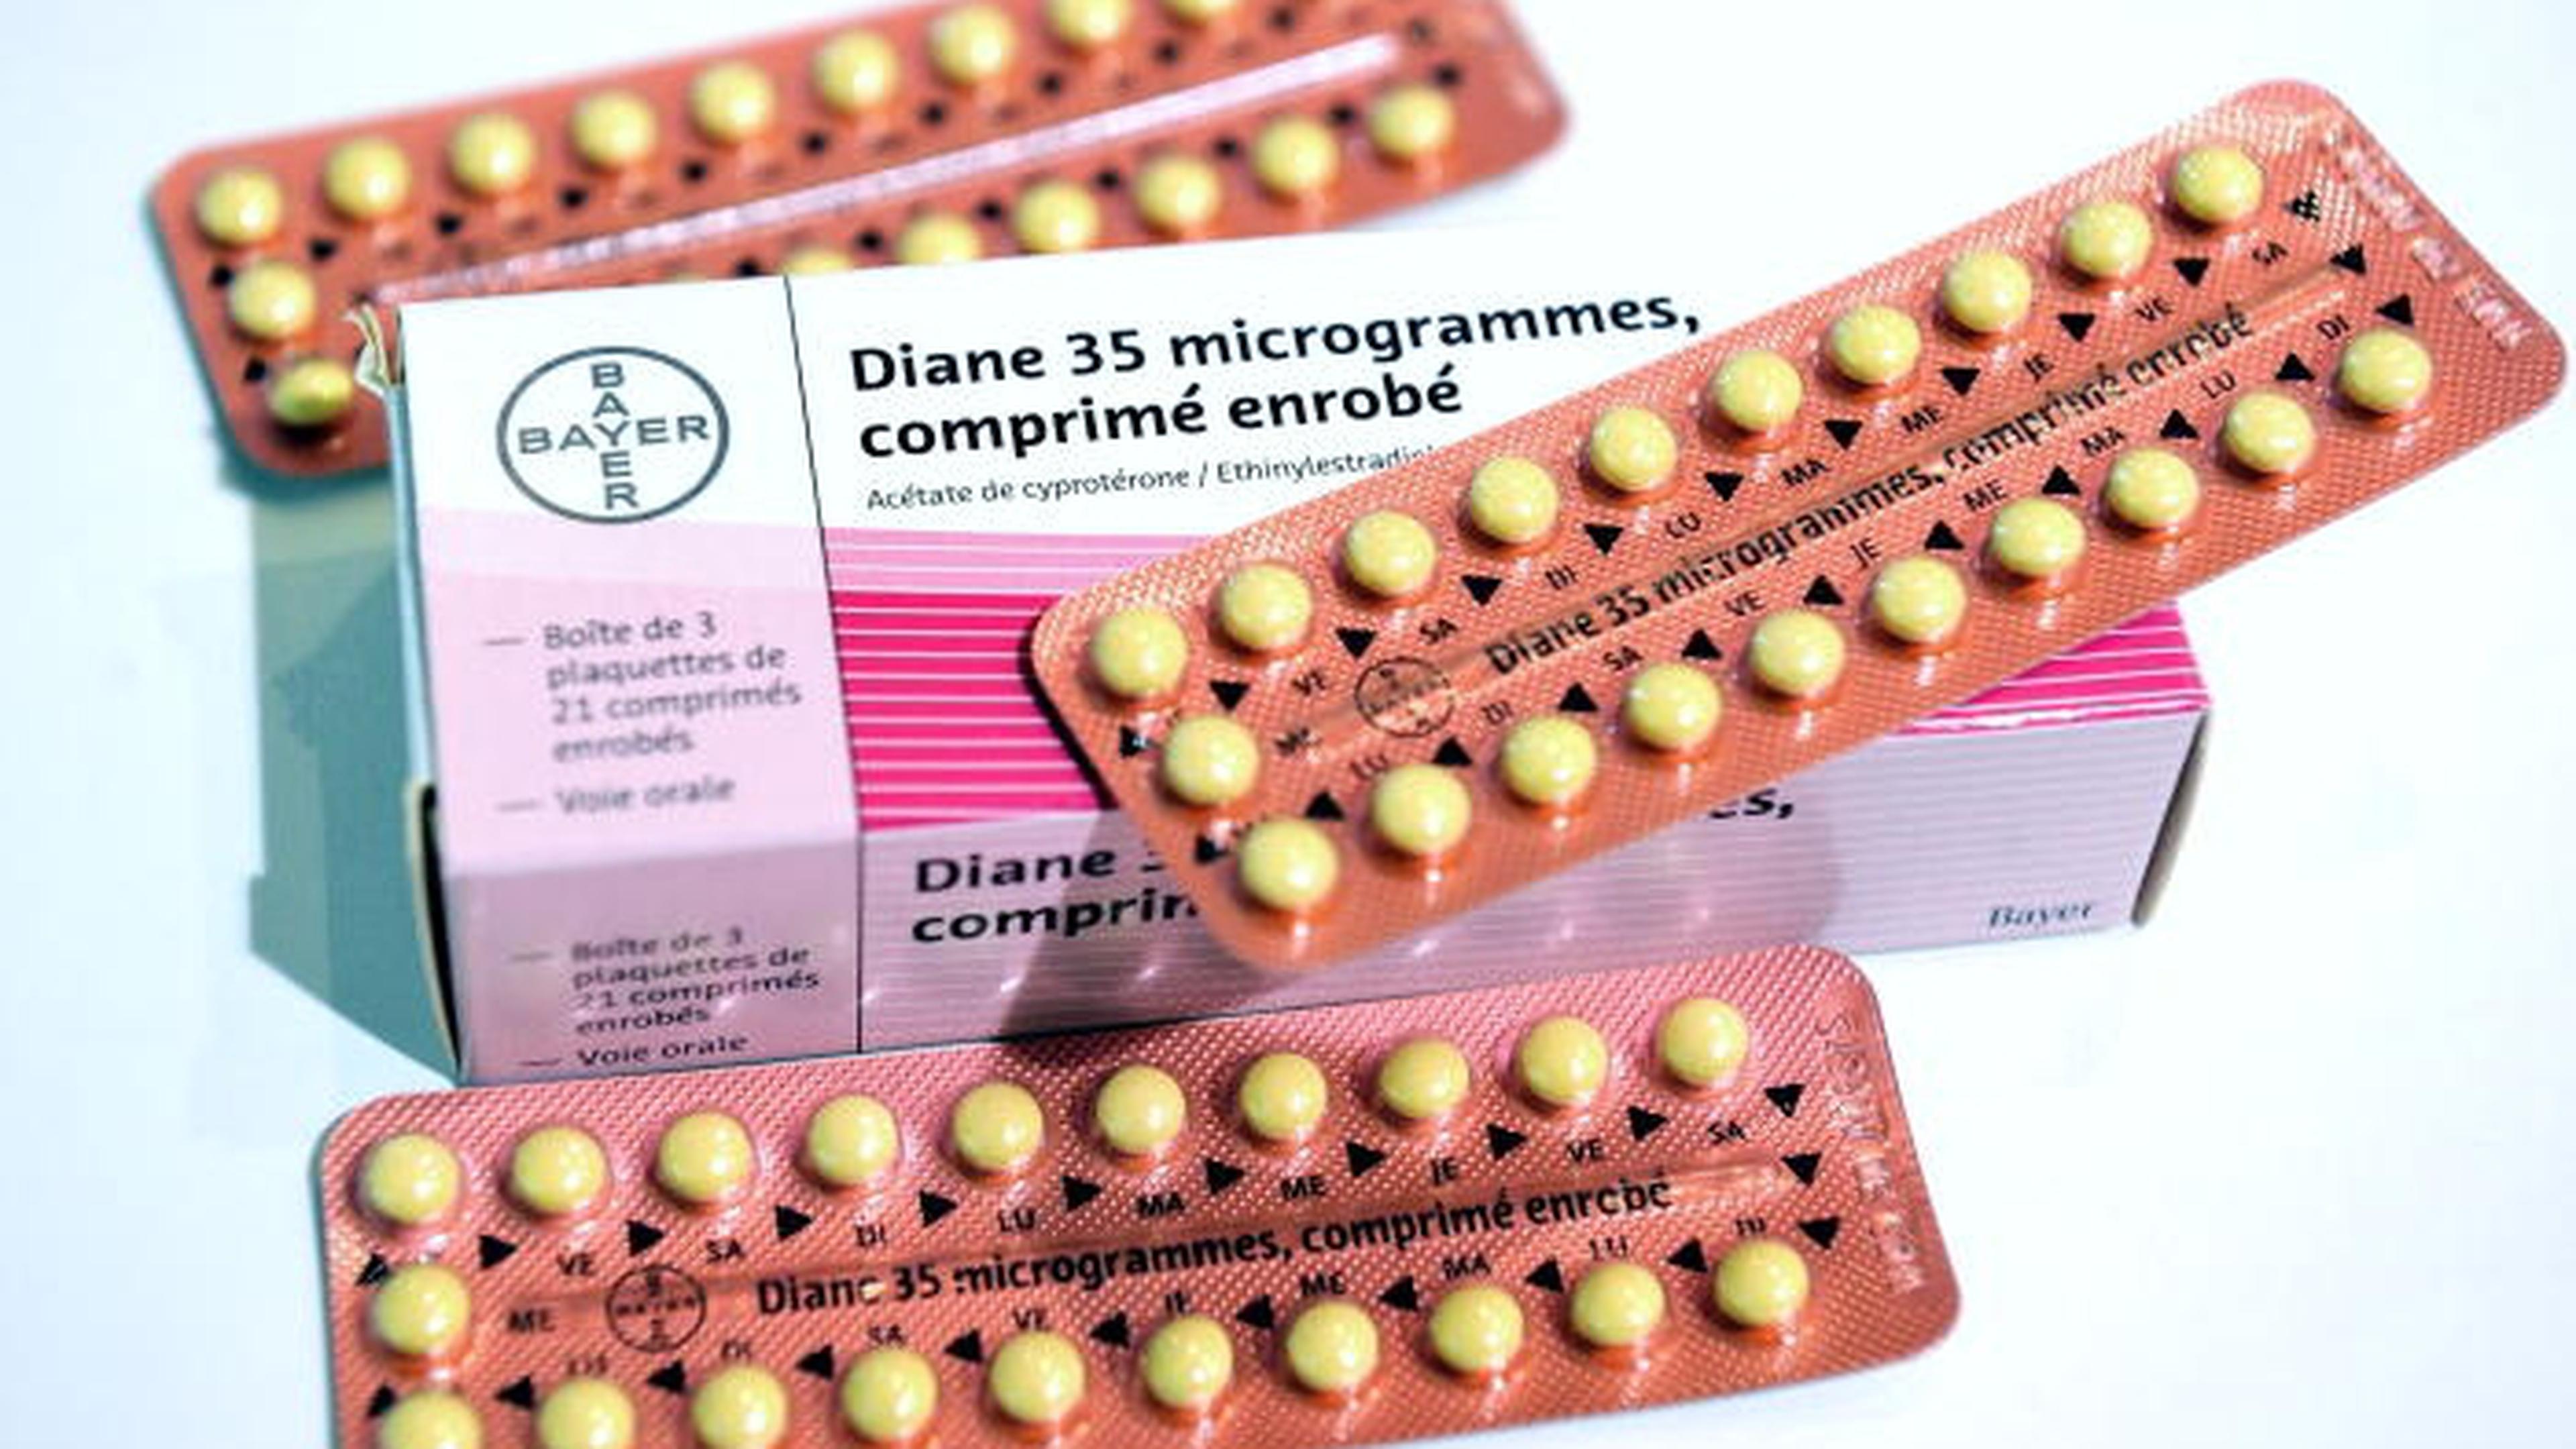 Le traitement anti-acné Diane 35, une nouvelle affaire Mediator ...